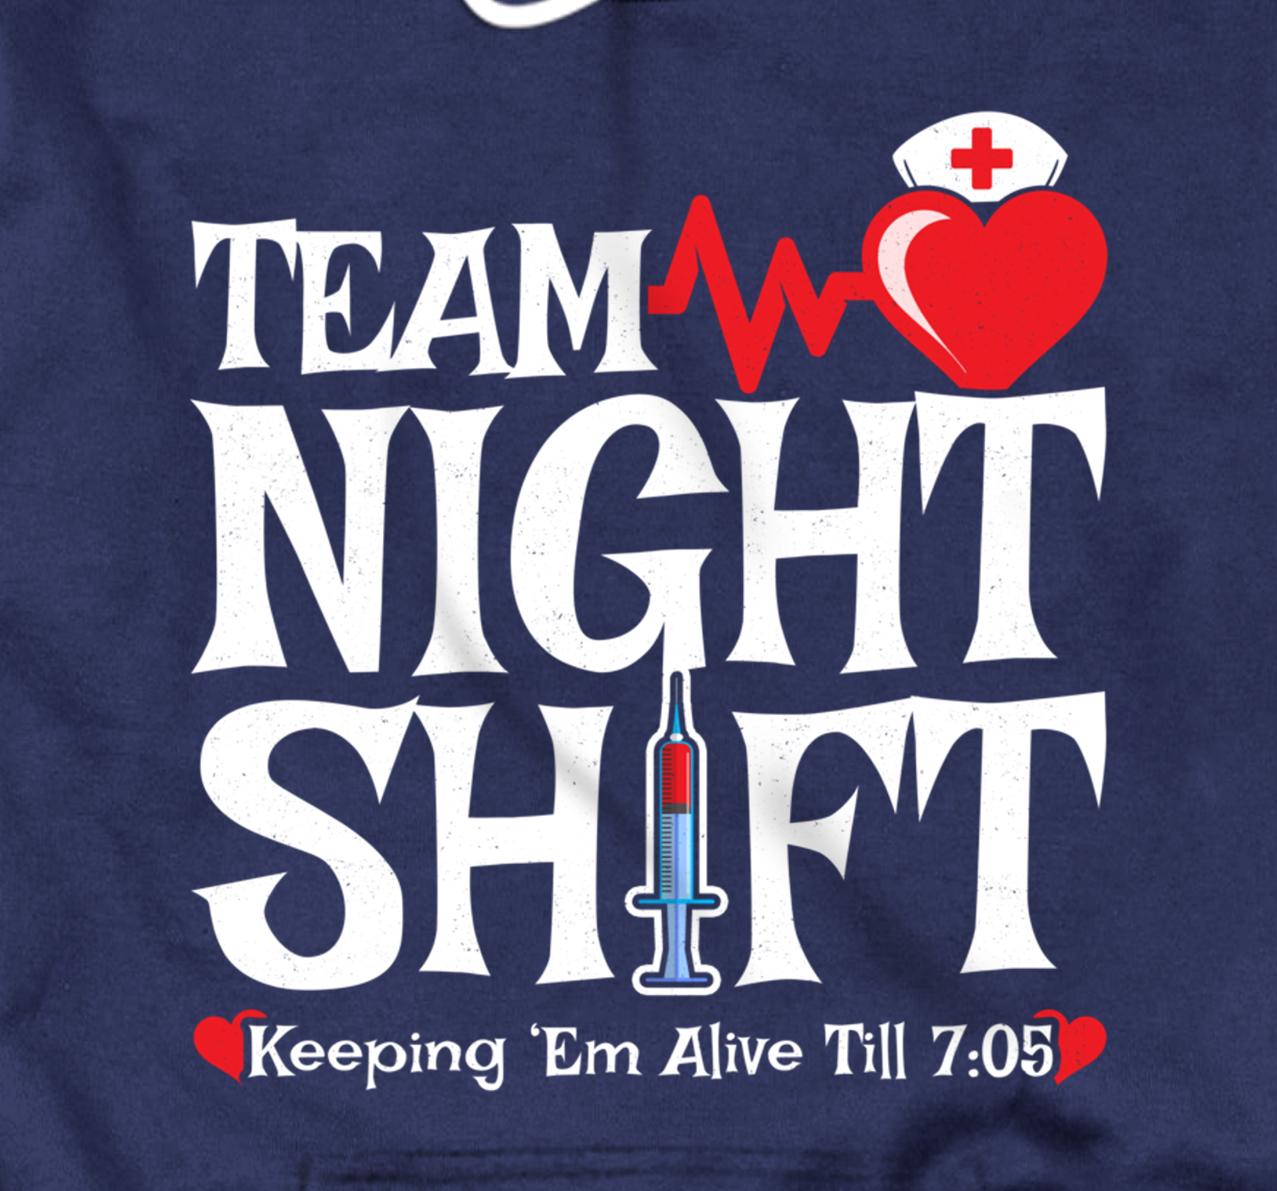 NIGHT SHIFT Squad Night Shift Nurse Crew Funny Nurse 